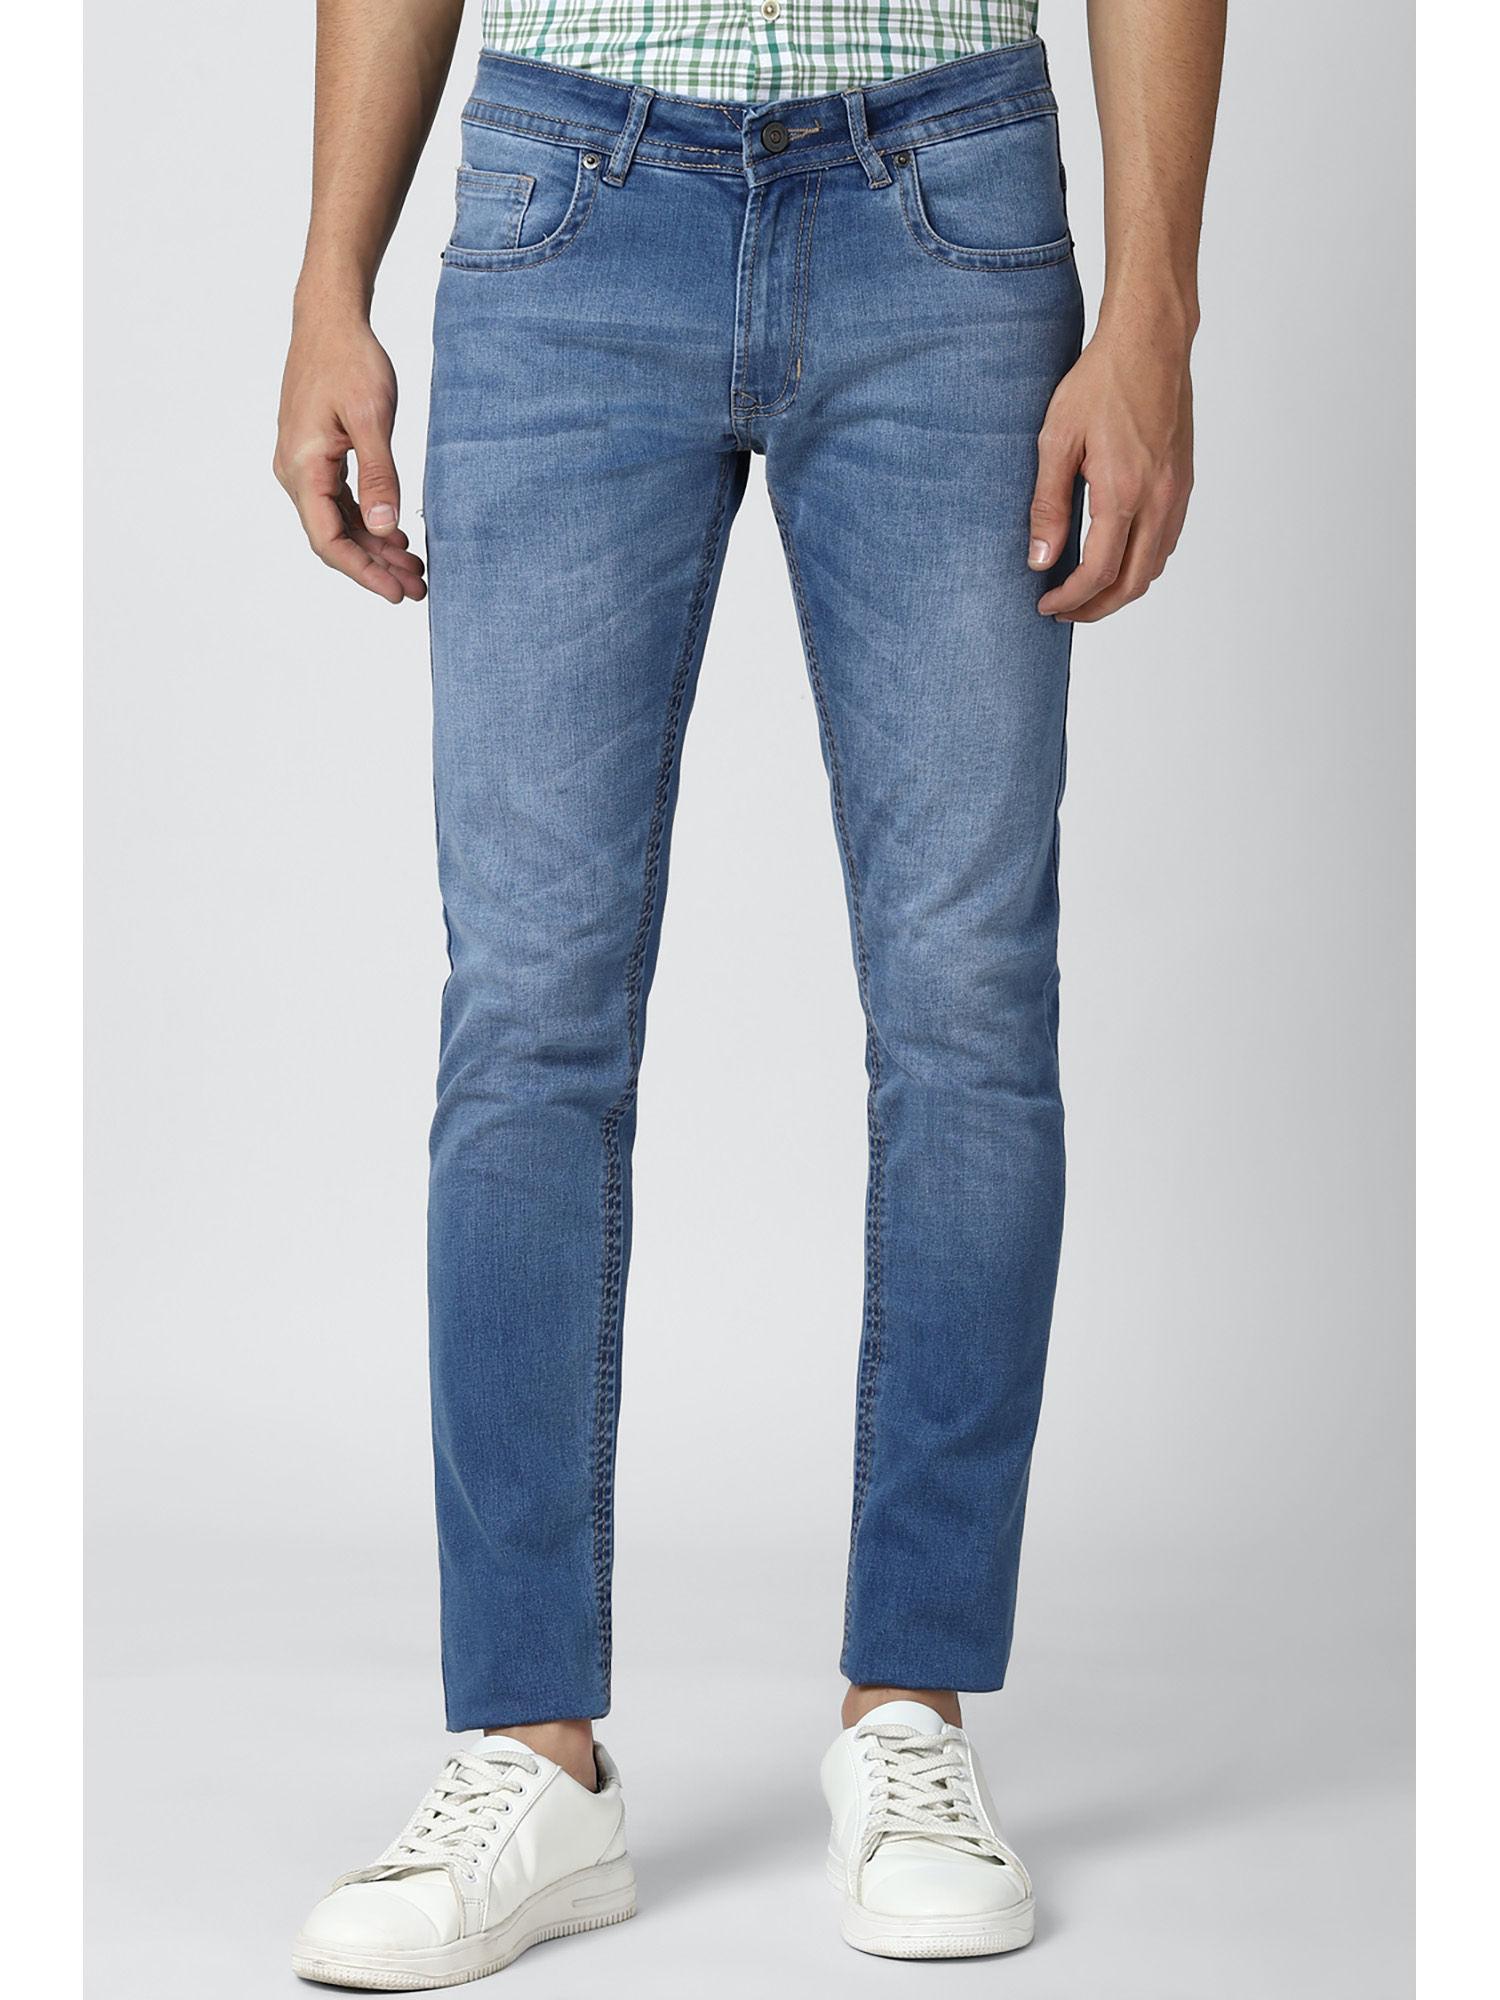 men-blue-jeans